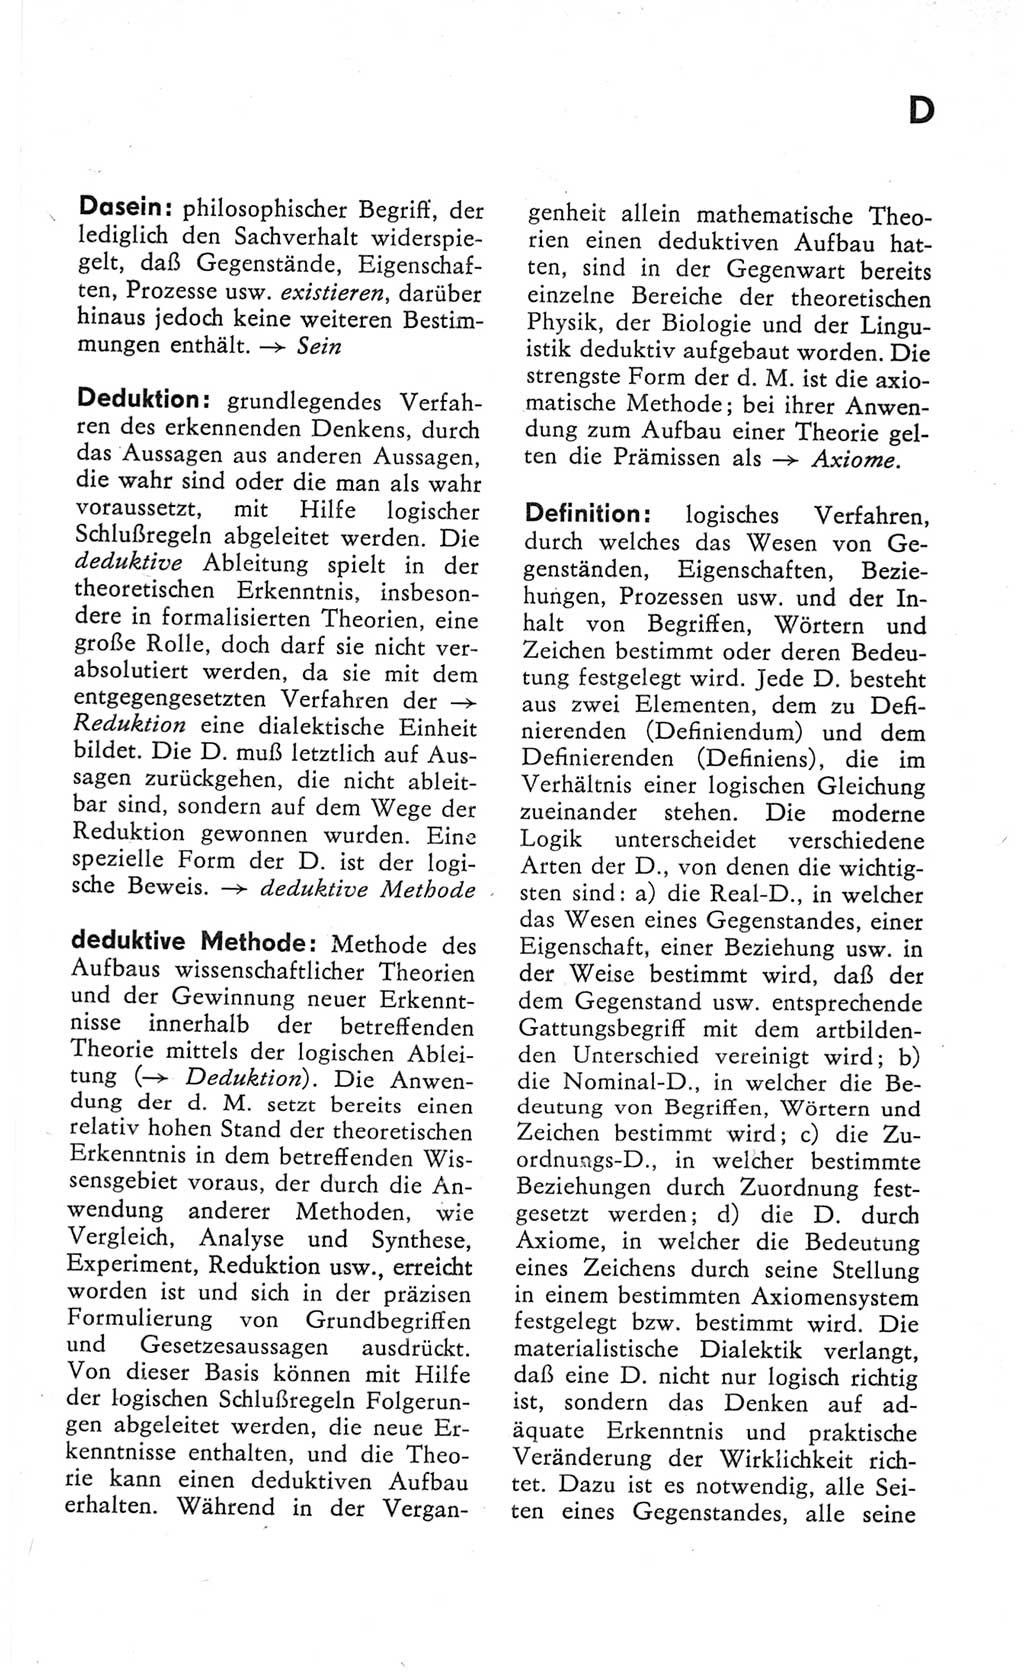 Kleines Wörterbuch der marxistisch-leninistischen Philosophie [Deutsche Demokratische Republik (DDR)] 1982, Seite 65 (Kl. Wb. ML Phil. DDR 1982, S. 65)